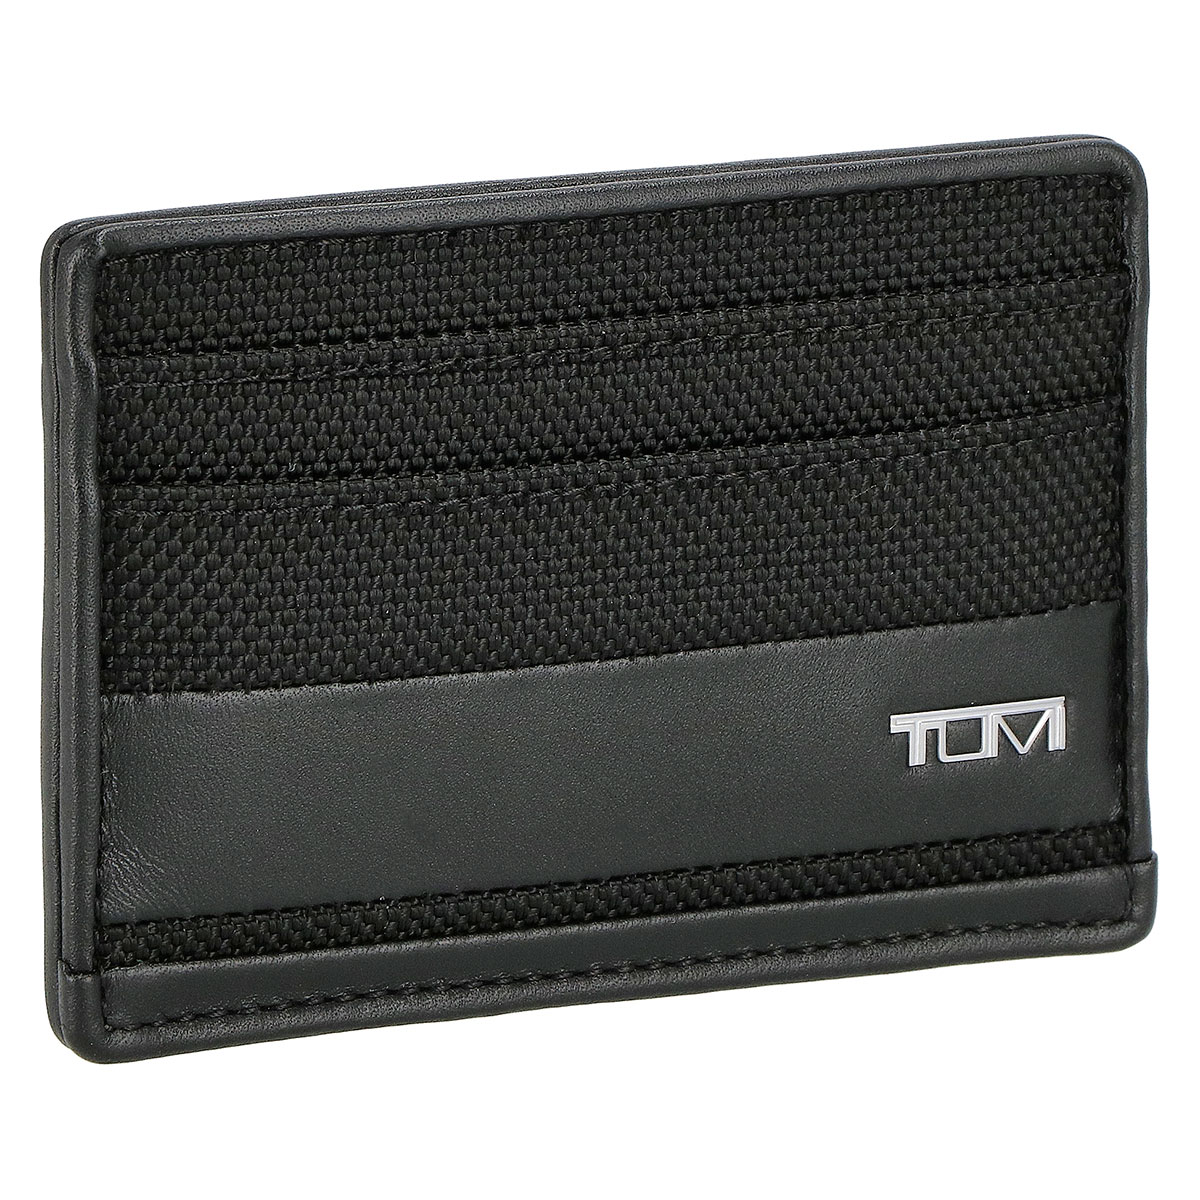 トゥミ TUMI カードケース パスケース 名刺入れ 1356331041 メンズ ブラックカードケース パスケース ブランド 人気 プレゼント 新品カー